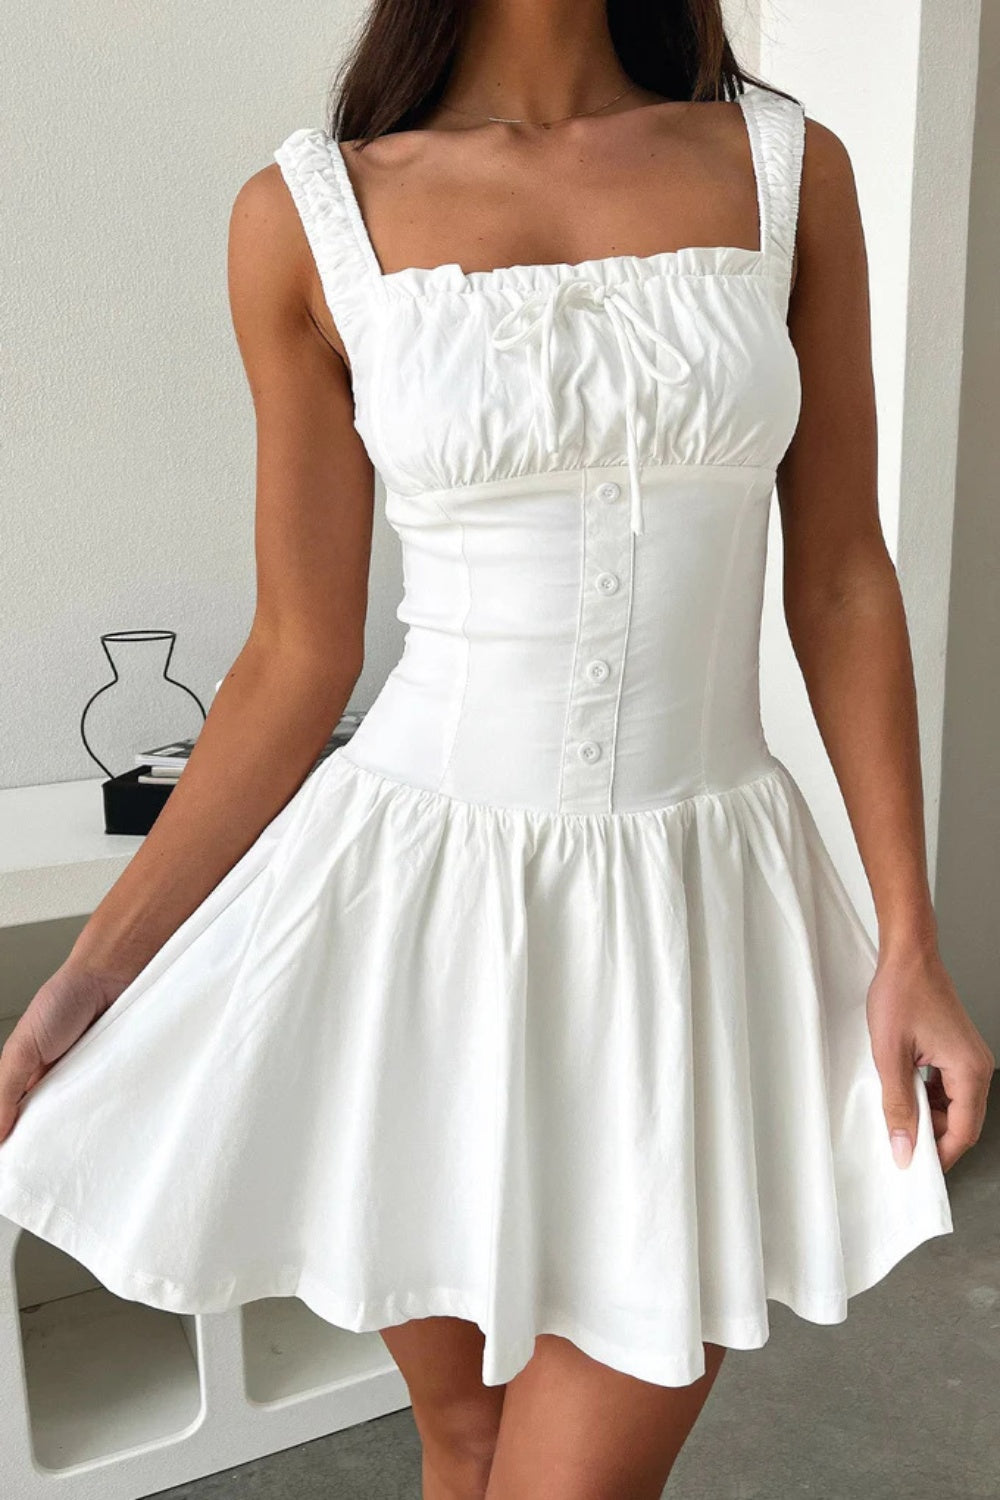 Decorative Button Square Neck Cami Dress White